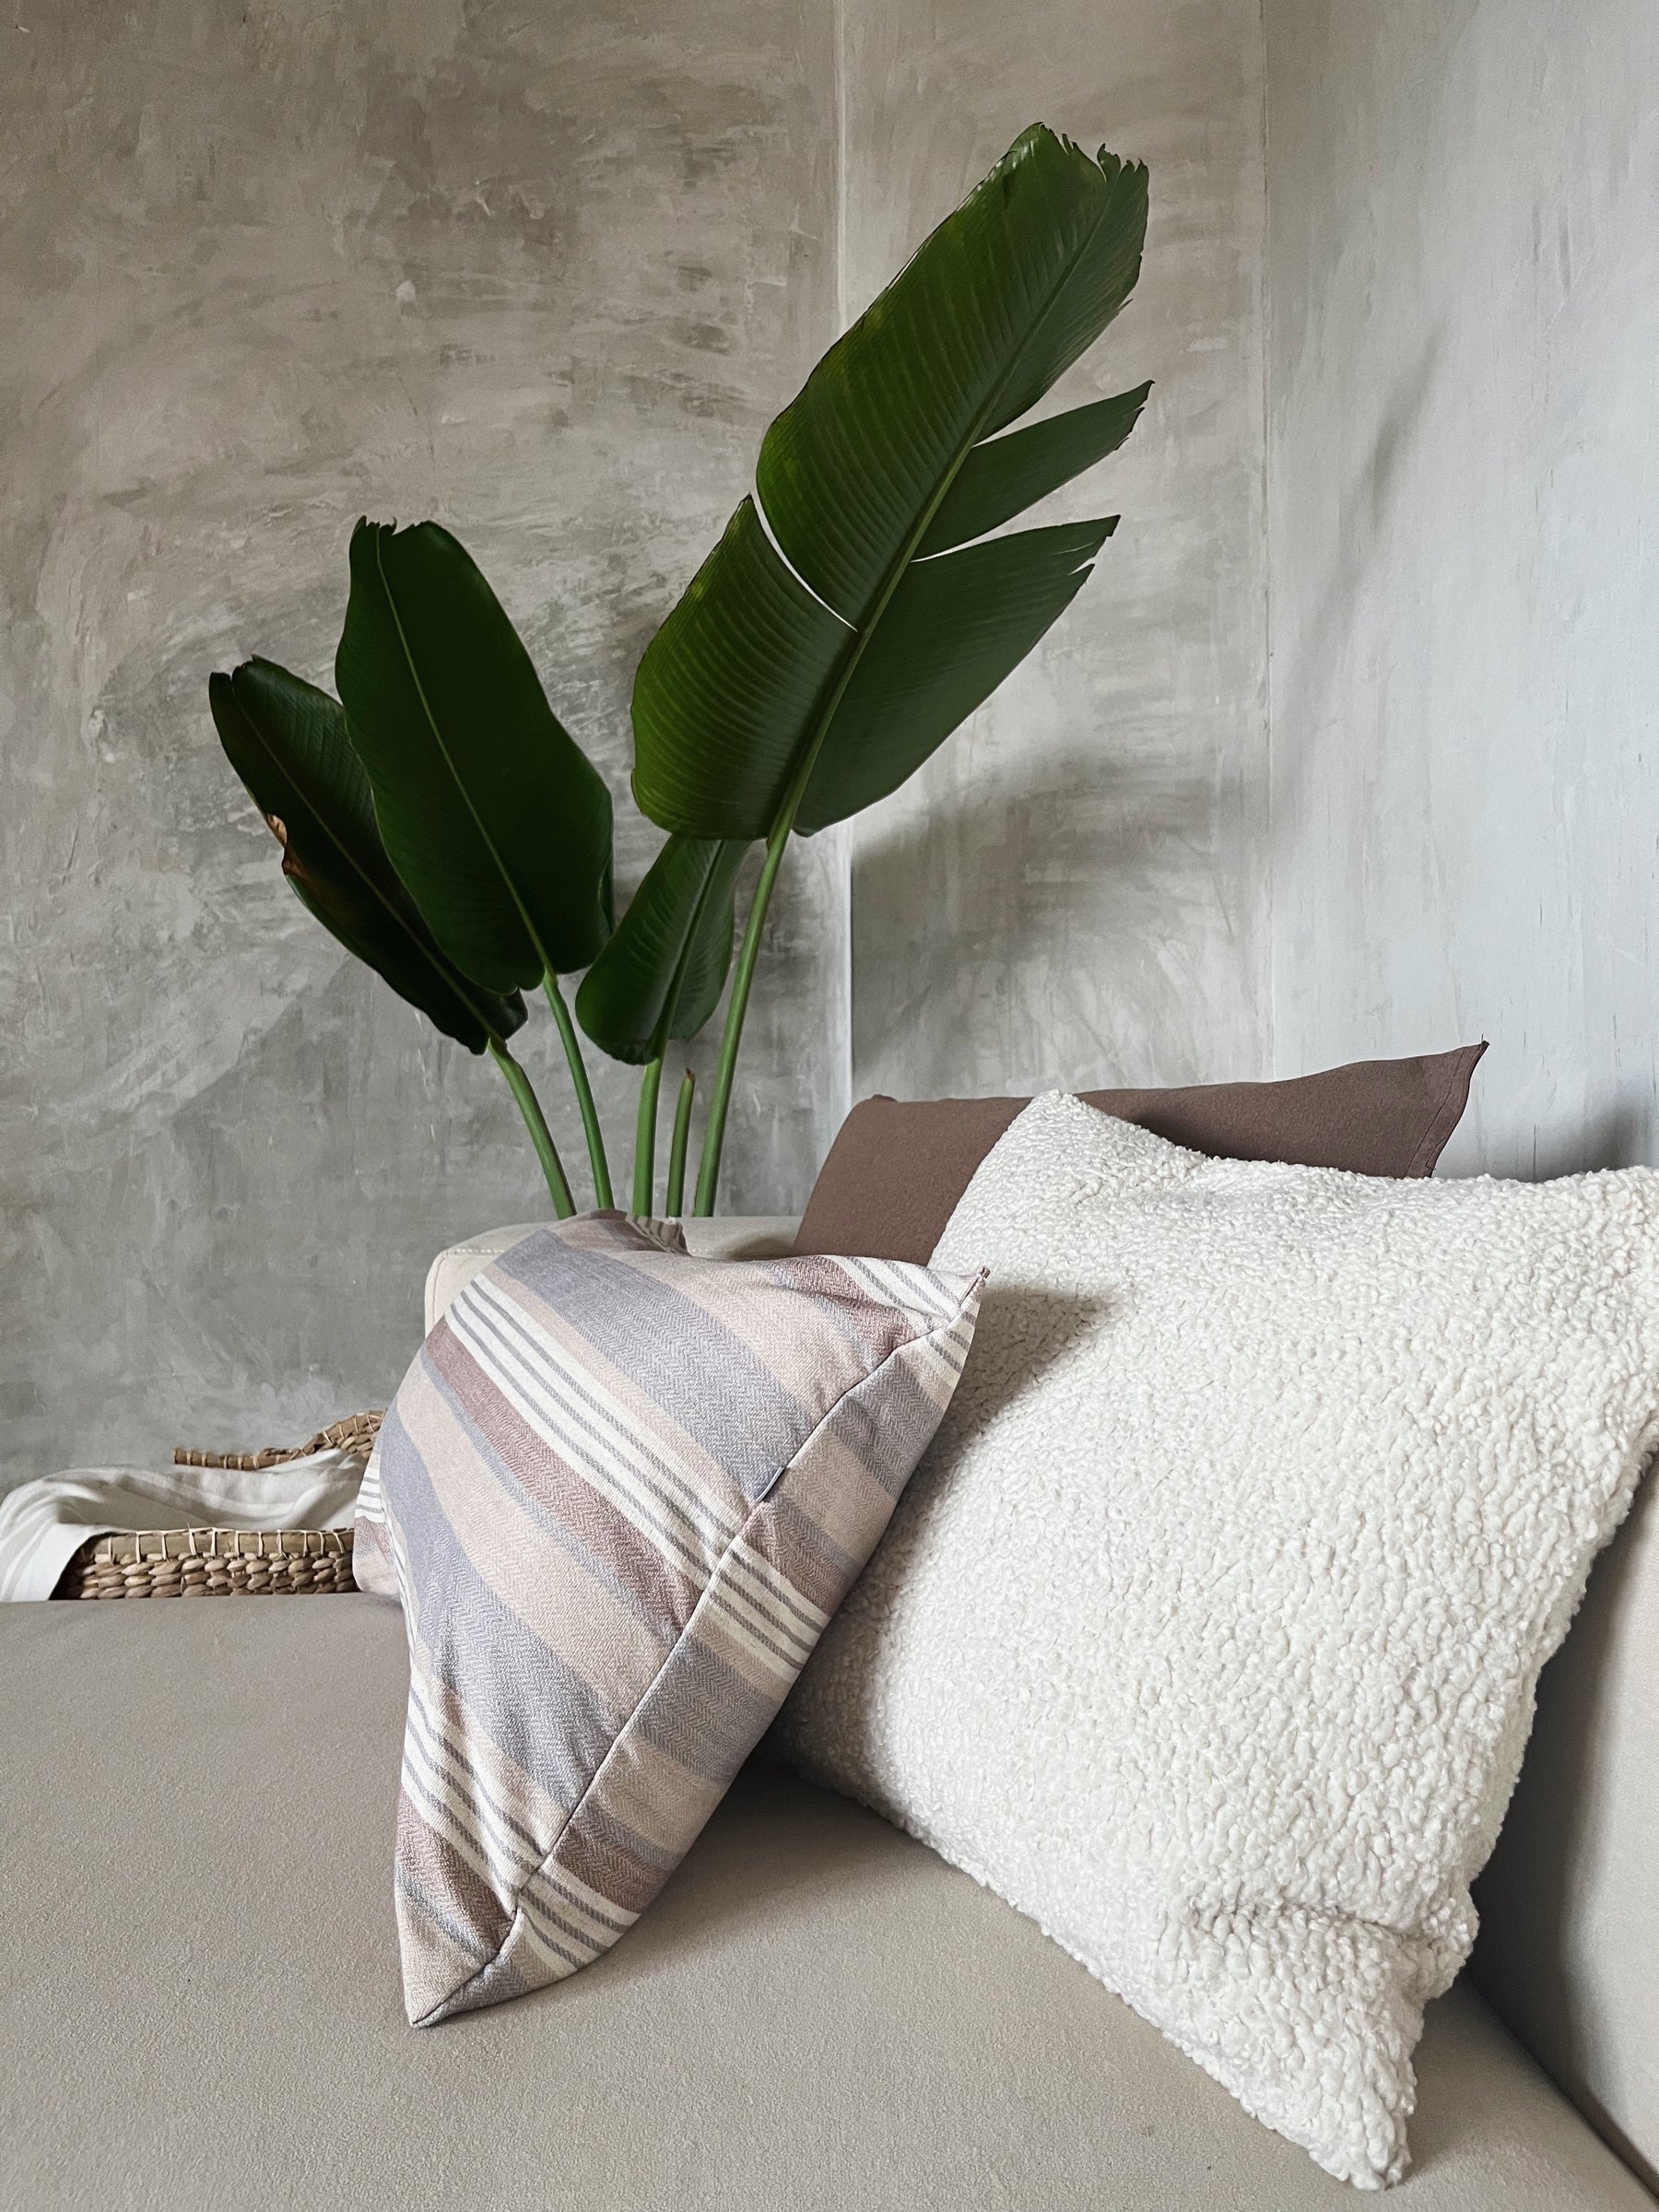 Cojines: El toque perfecto para transformar tu sofá en un oasis de estilo y comodidad